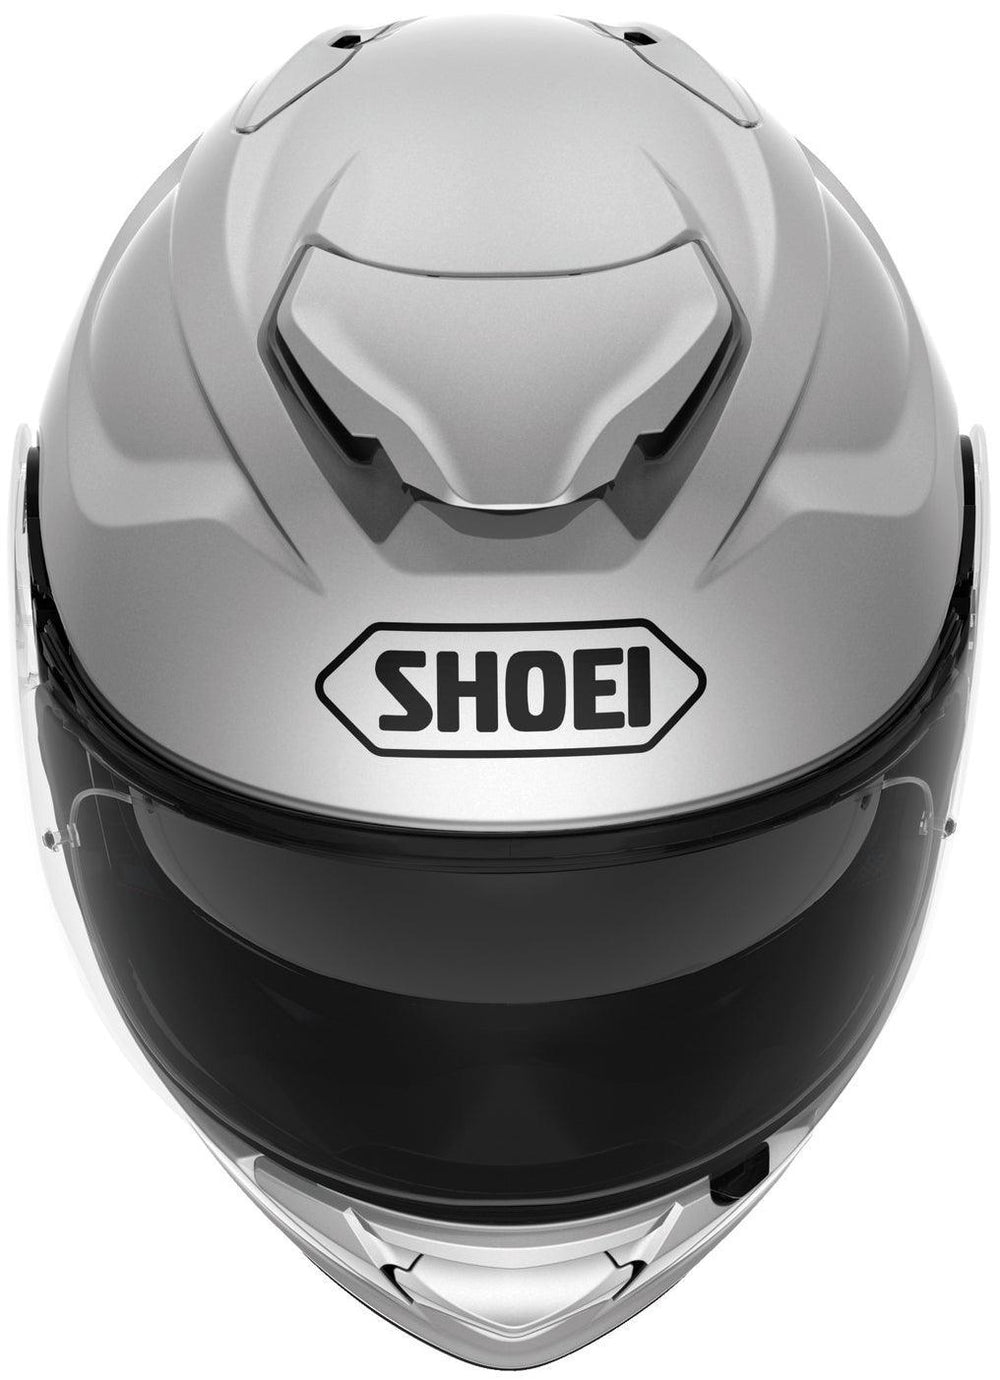 Shoei GT-Air II Helmet - Silver - Motor Psycho Sport